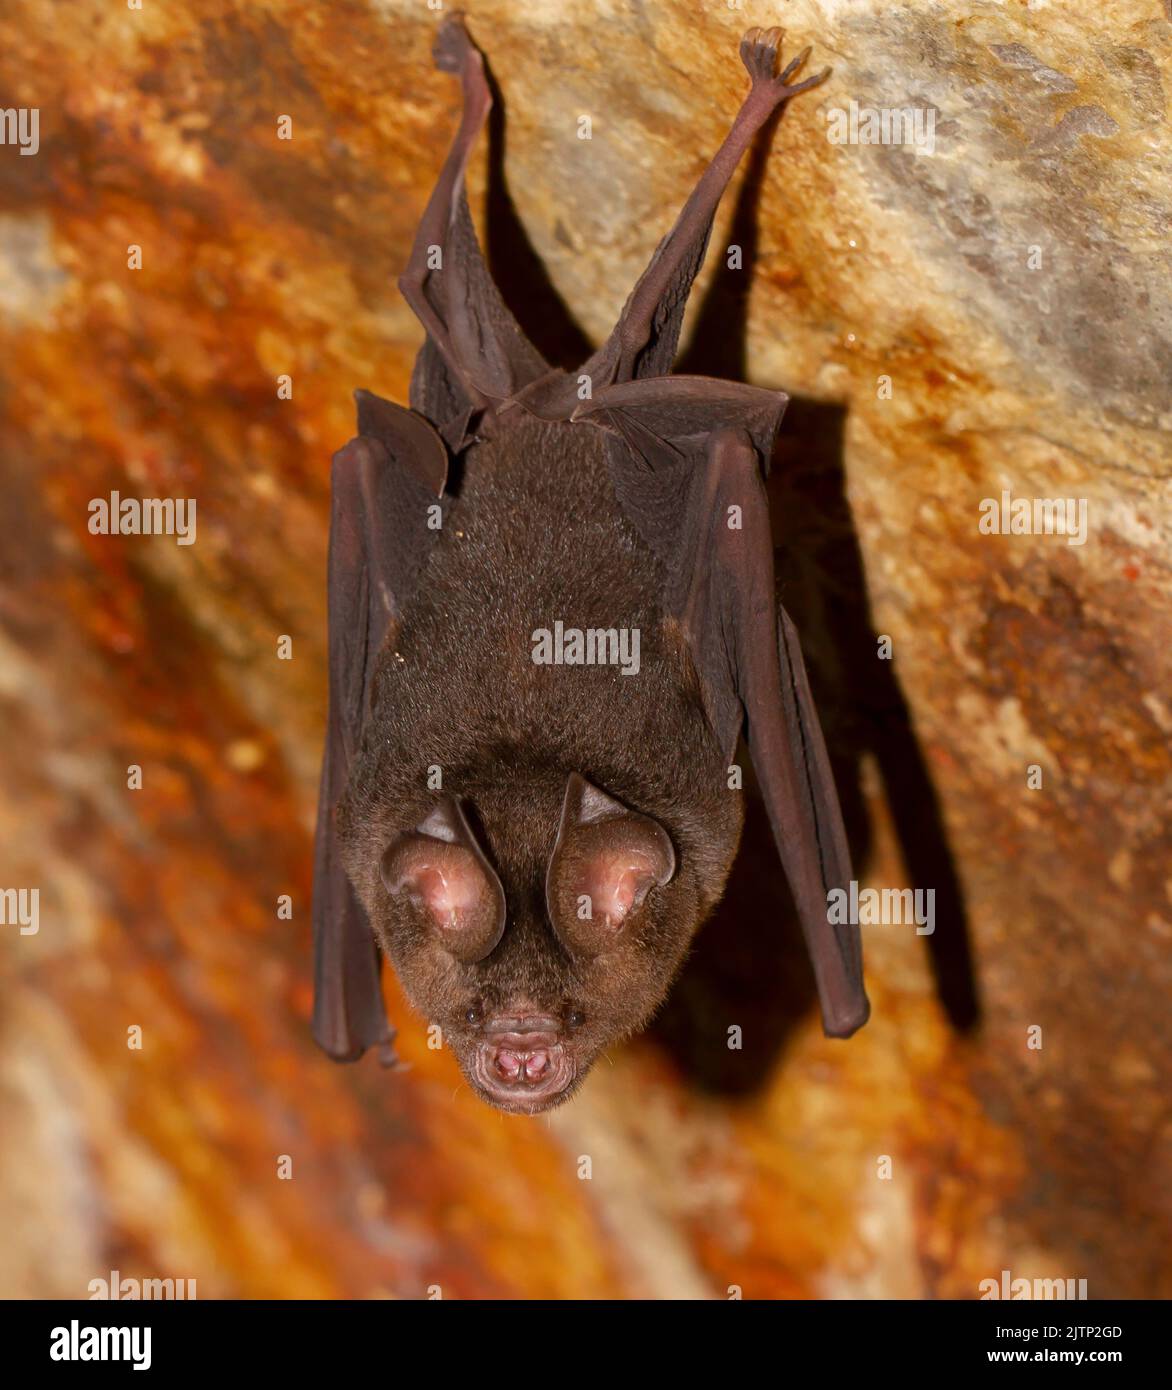 Chauve-souris dans une grotte ; micro-chauve-souris dans la grotte ; chauve-souris se reposant dans une grotte, chauve-souris au repos ; micro-chauve-souris de Galle, Sri Lanka; Banque D'Images